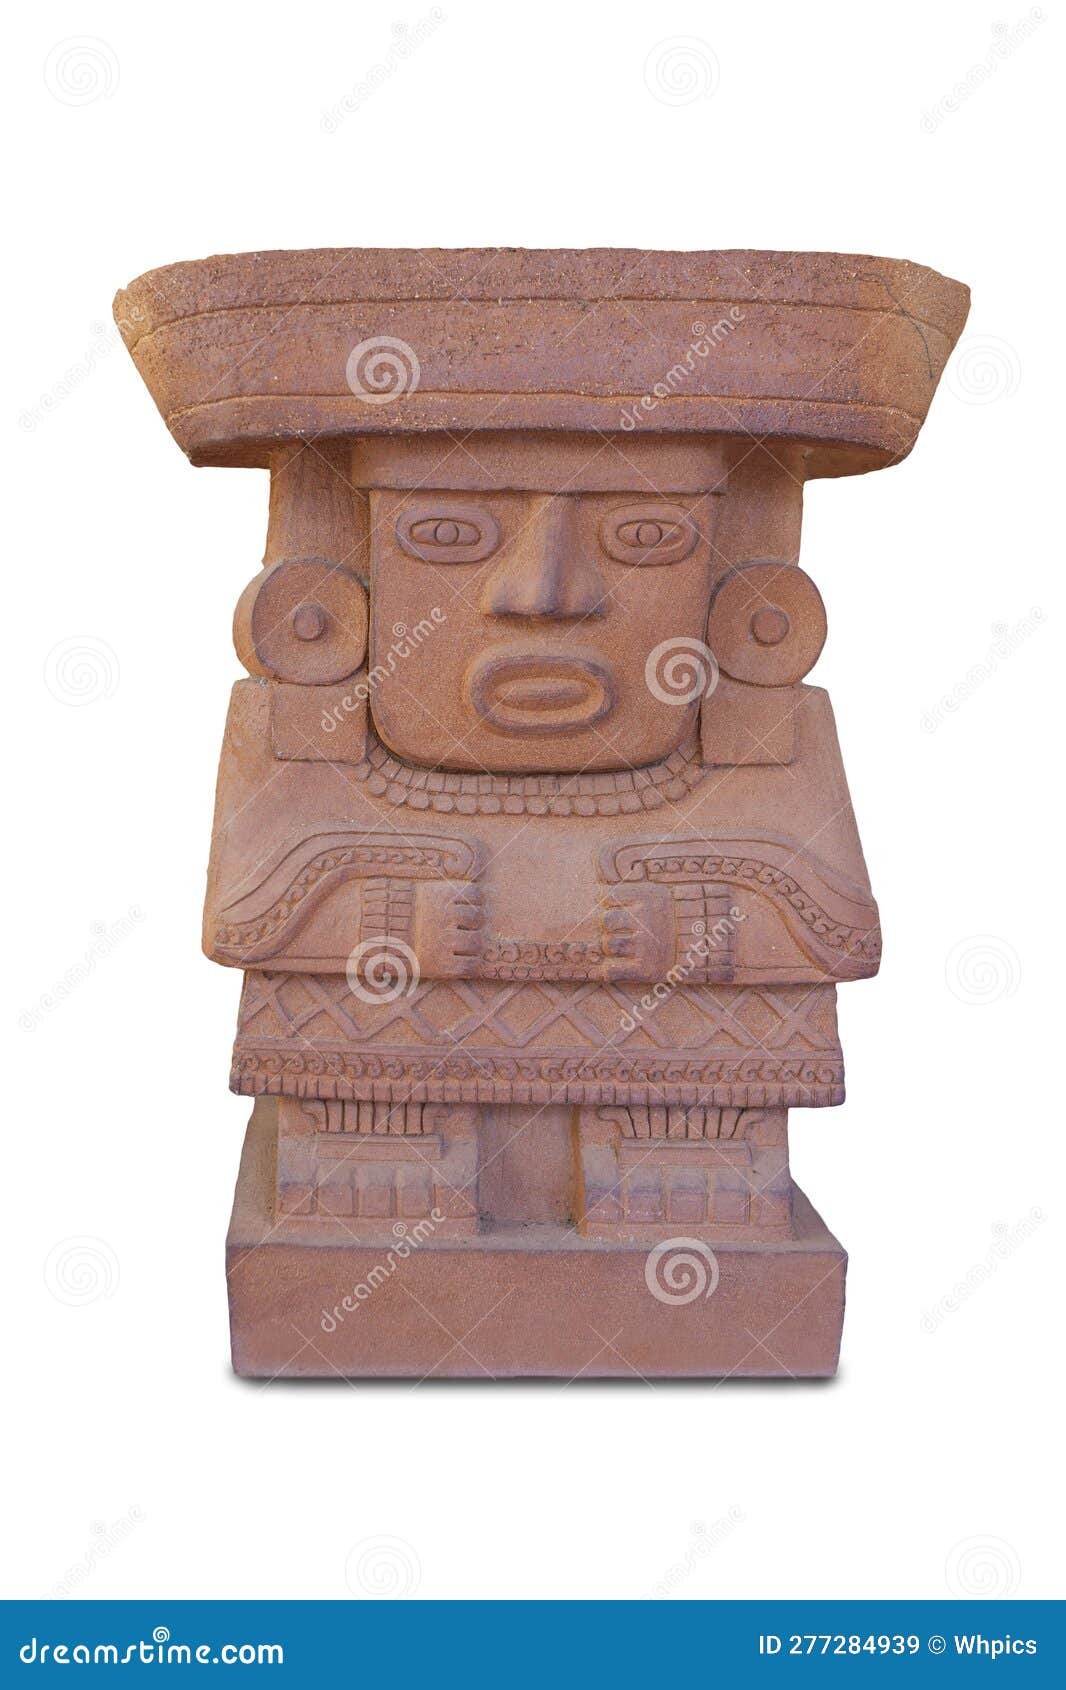 mayans civilization souvenirs, terracotta replicas